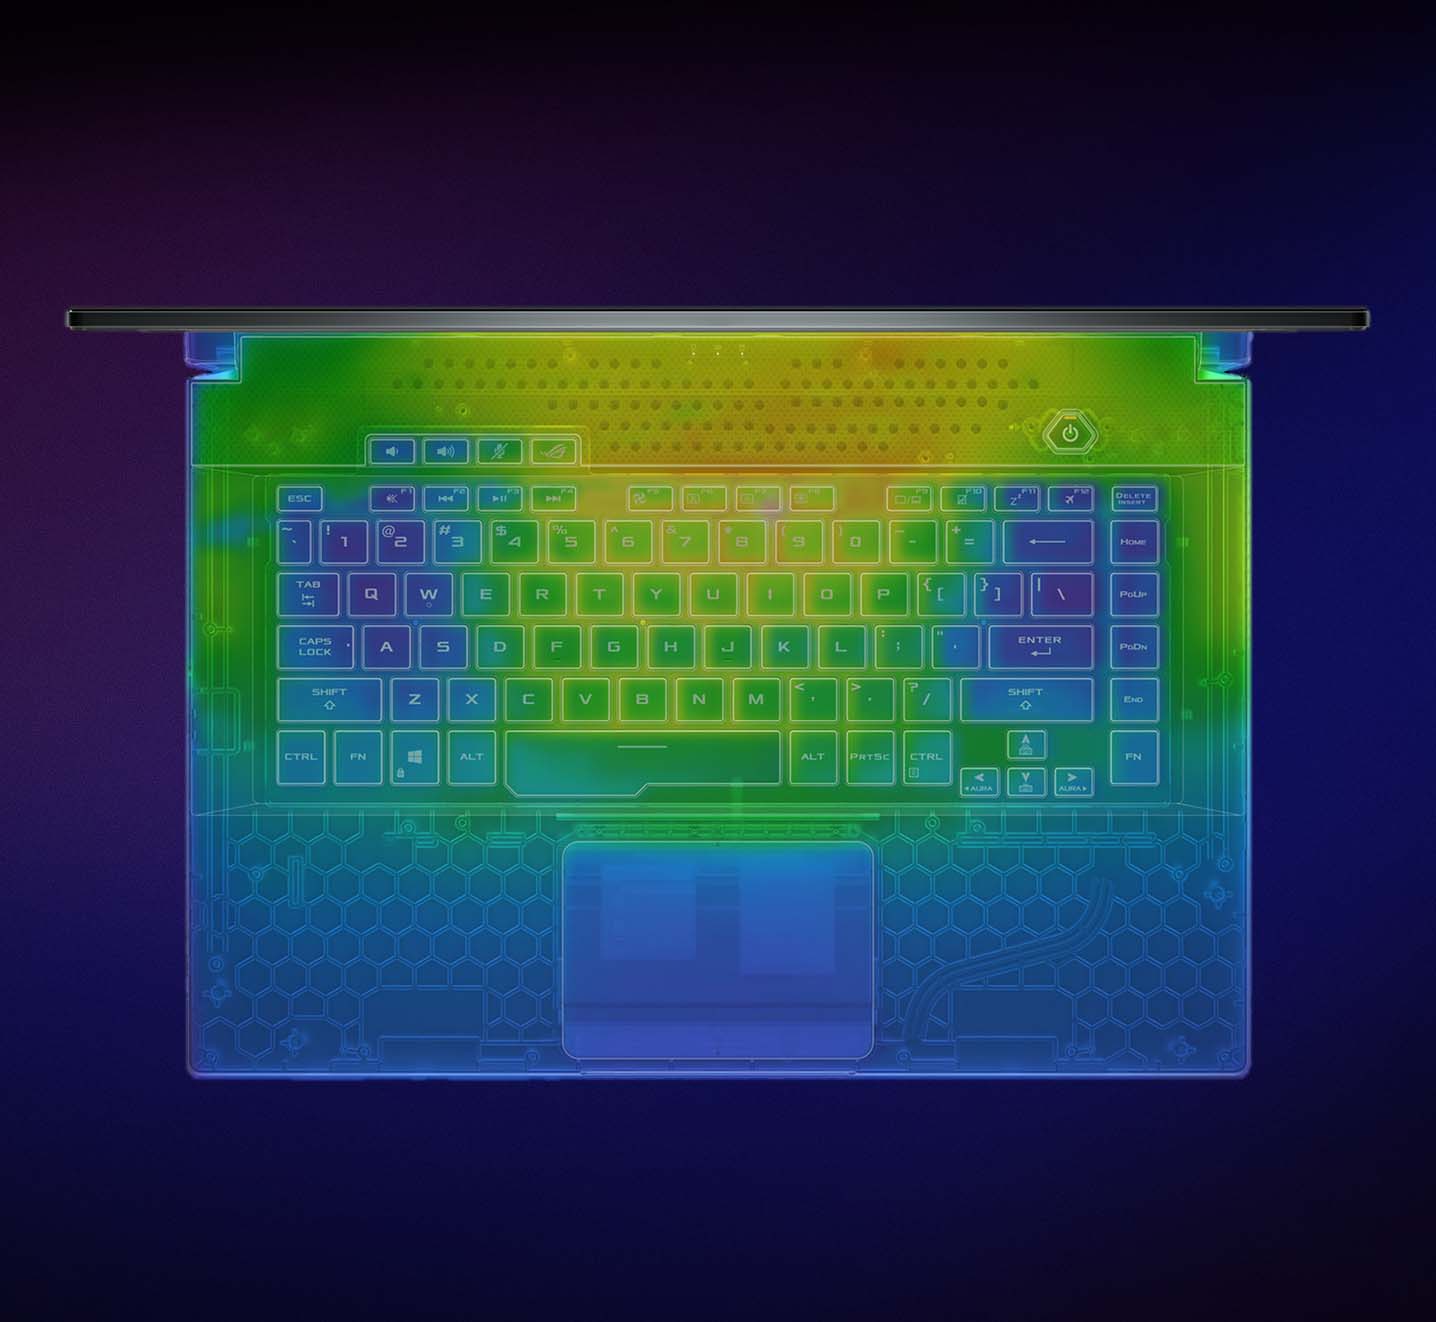 Thermische beeldvorming van het Strix G17 toetsenbord.